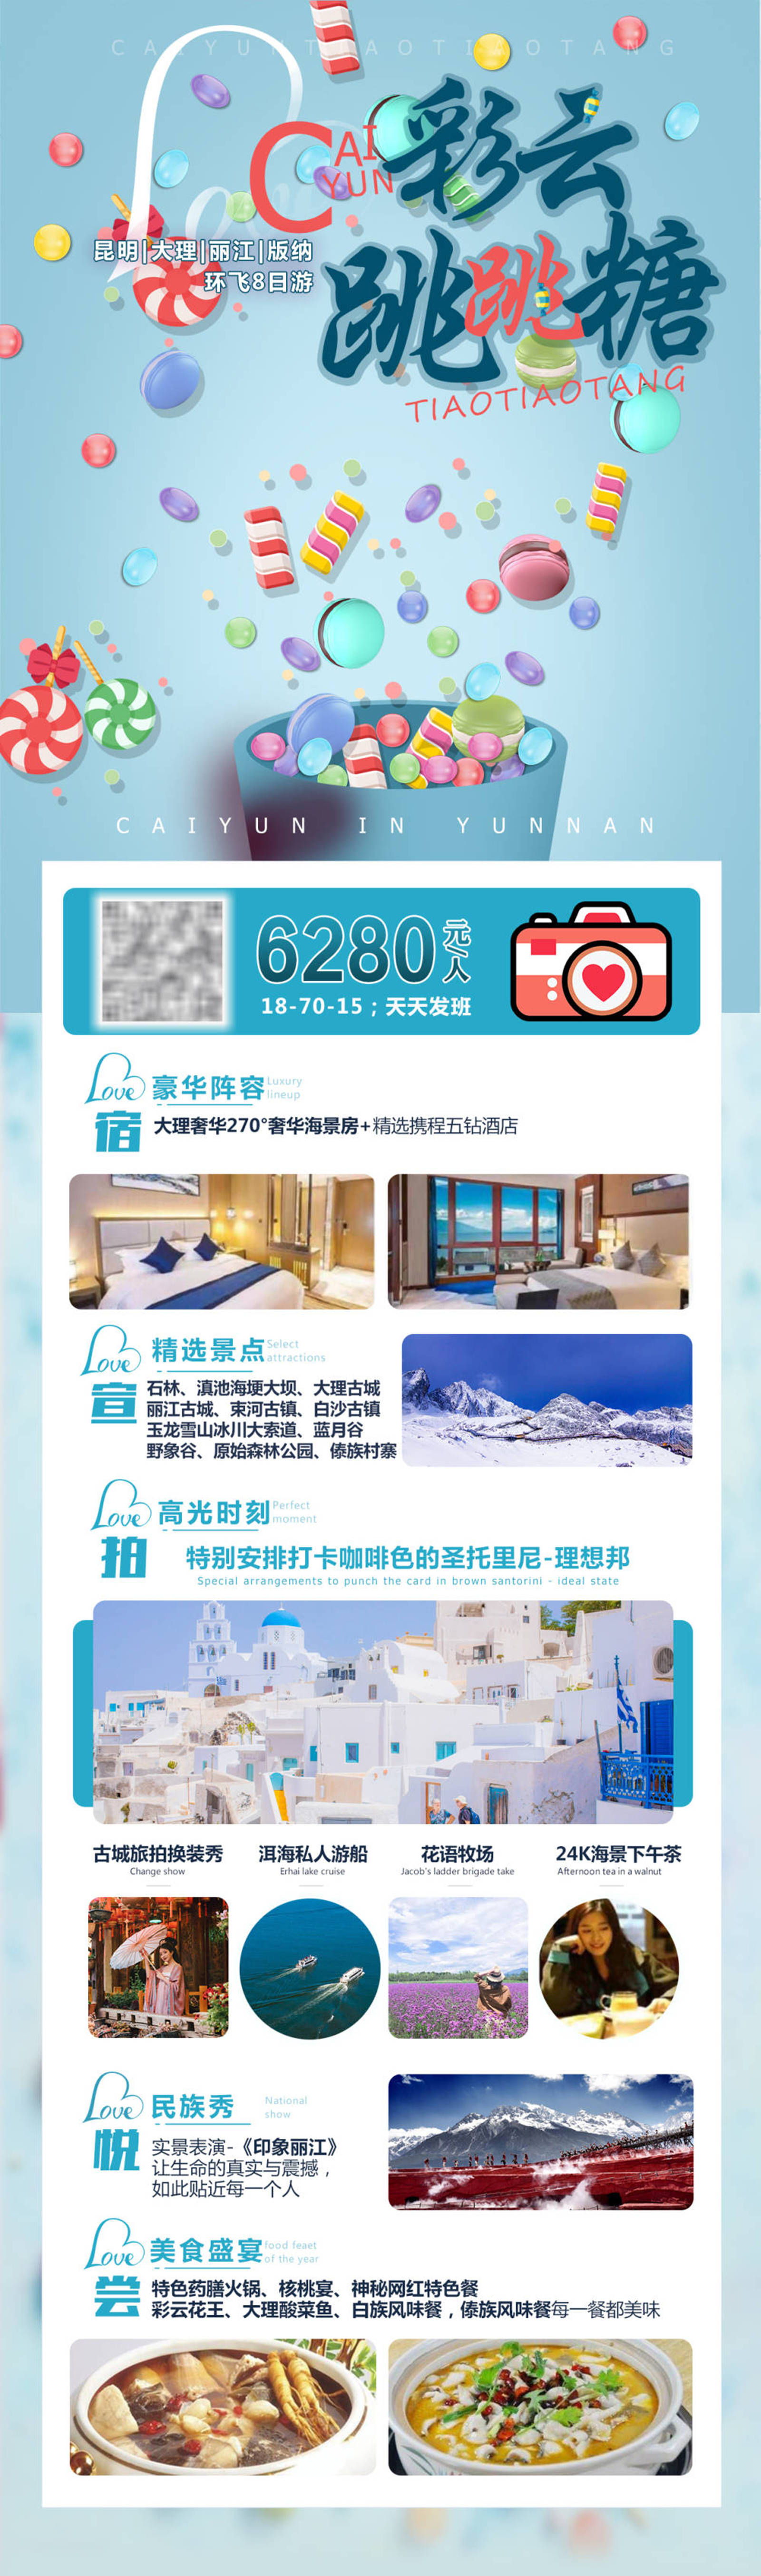 云南休闲旅游品牌宣传系列海报-第4张